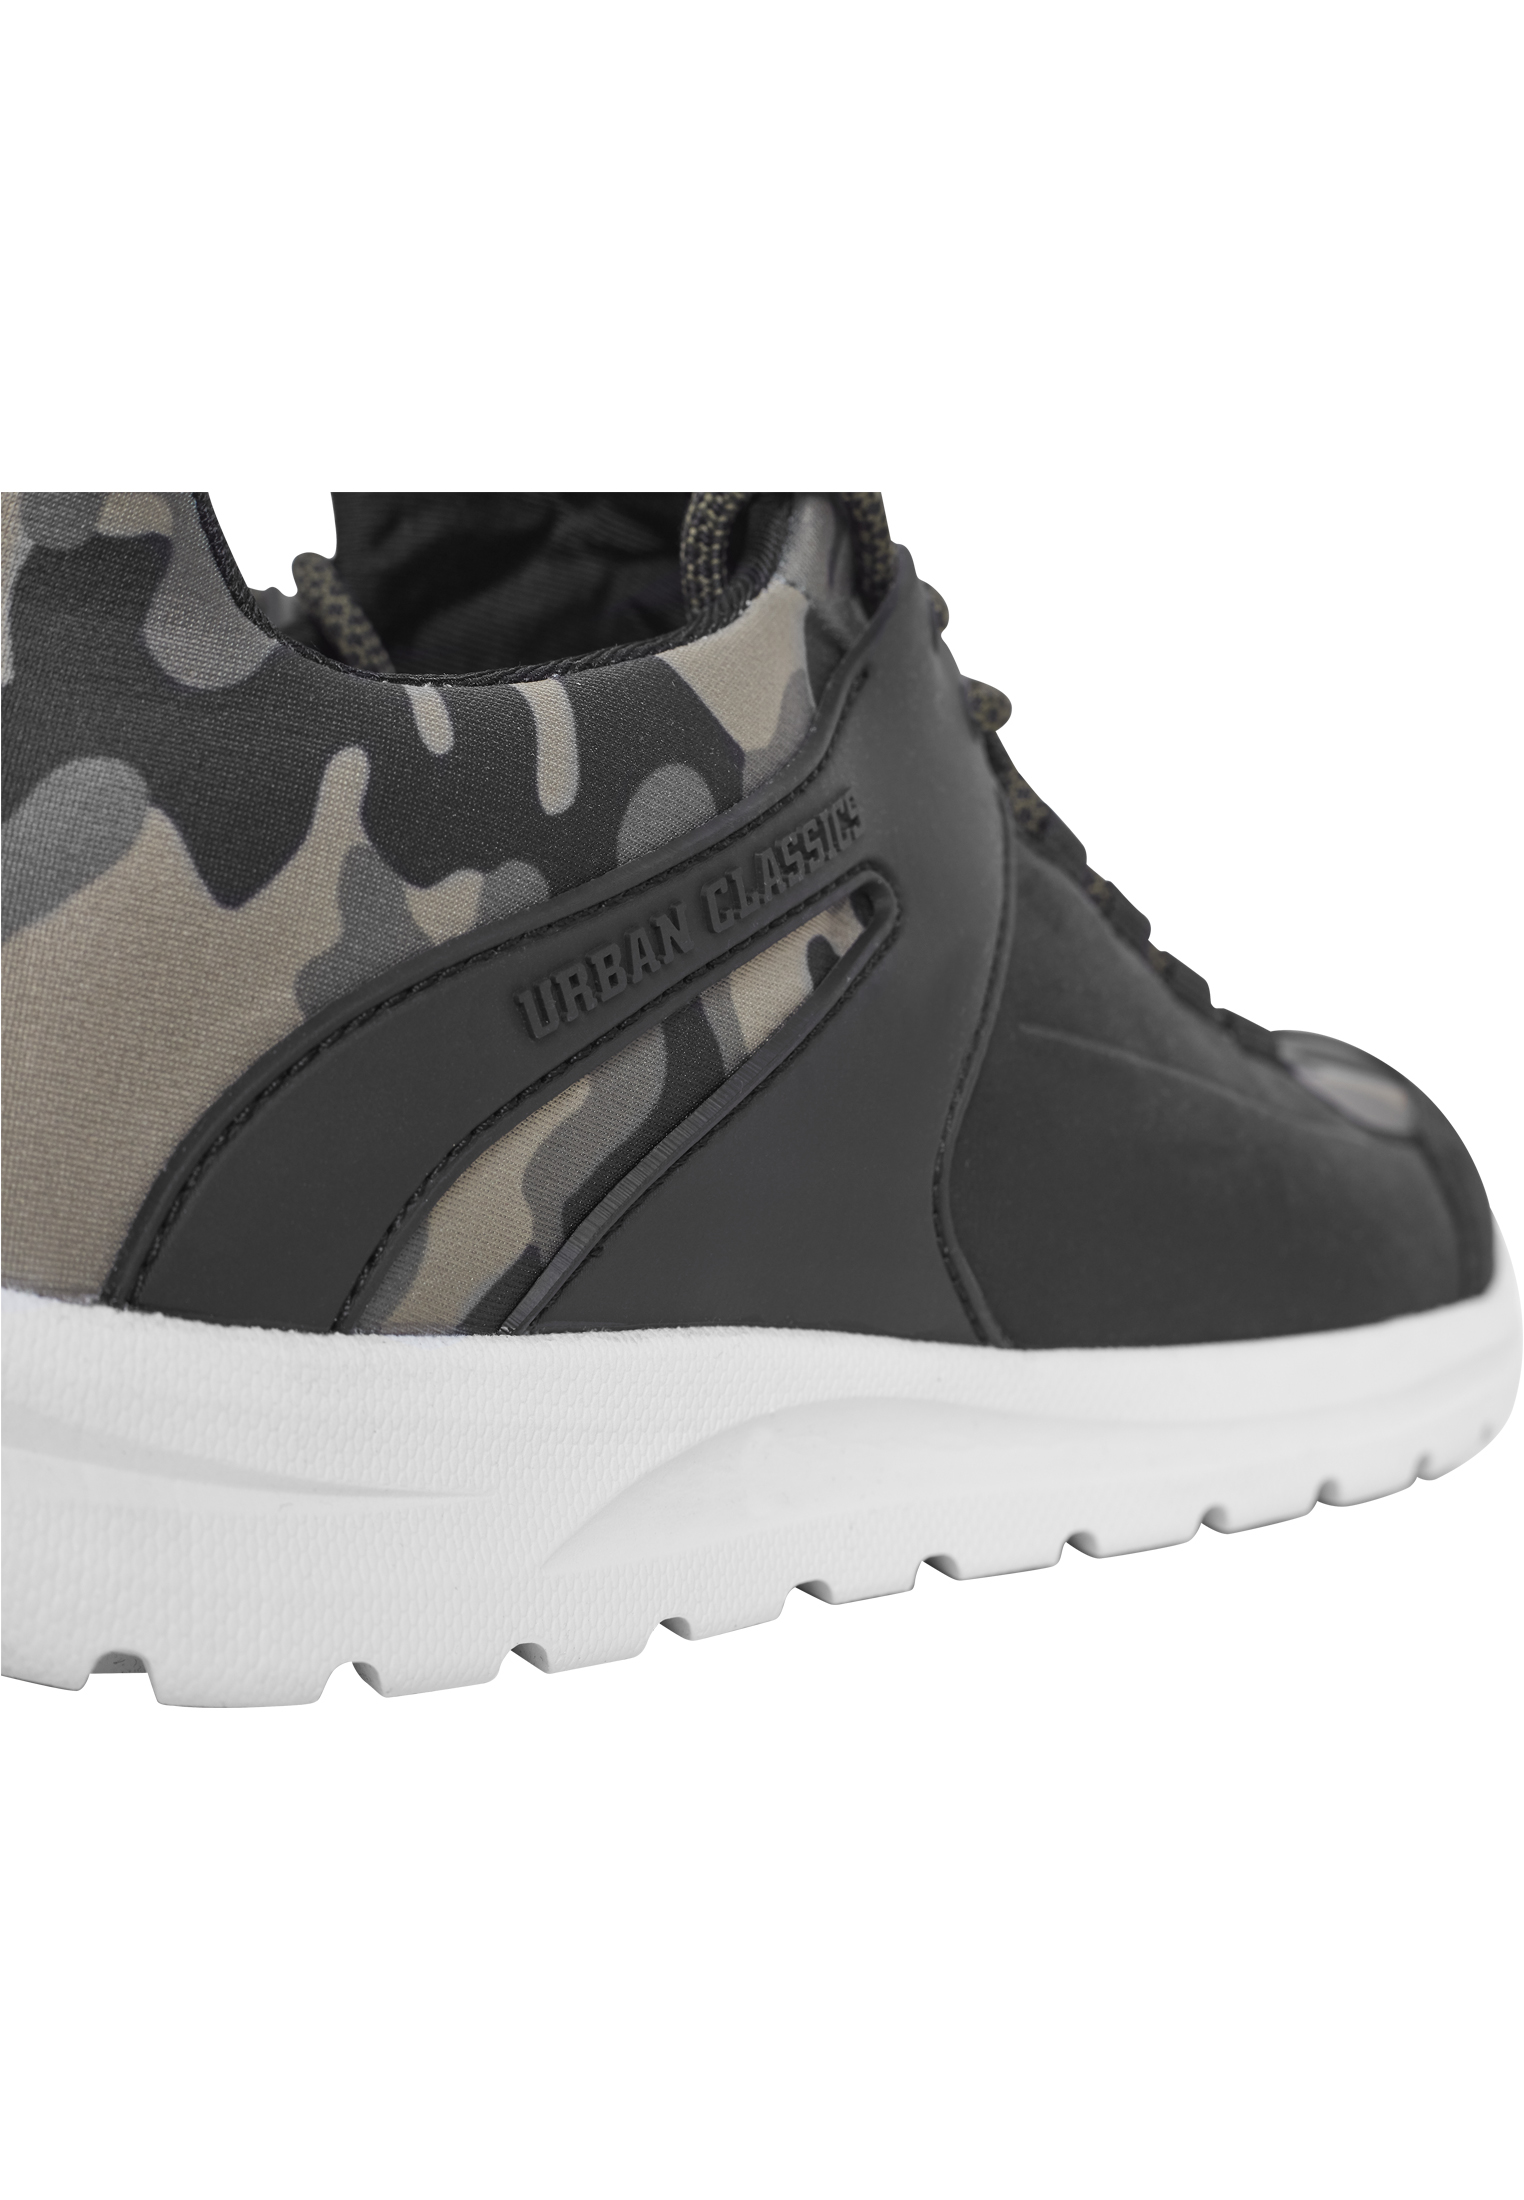 Schuhe Trend Sneaker in Farbe olivecamo/blk/wht